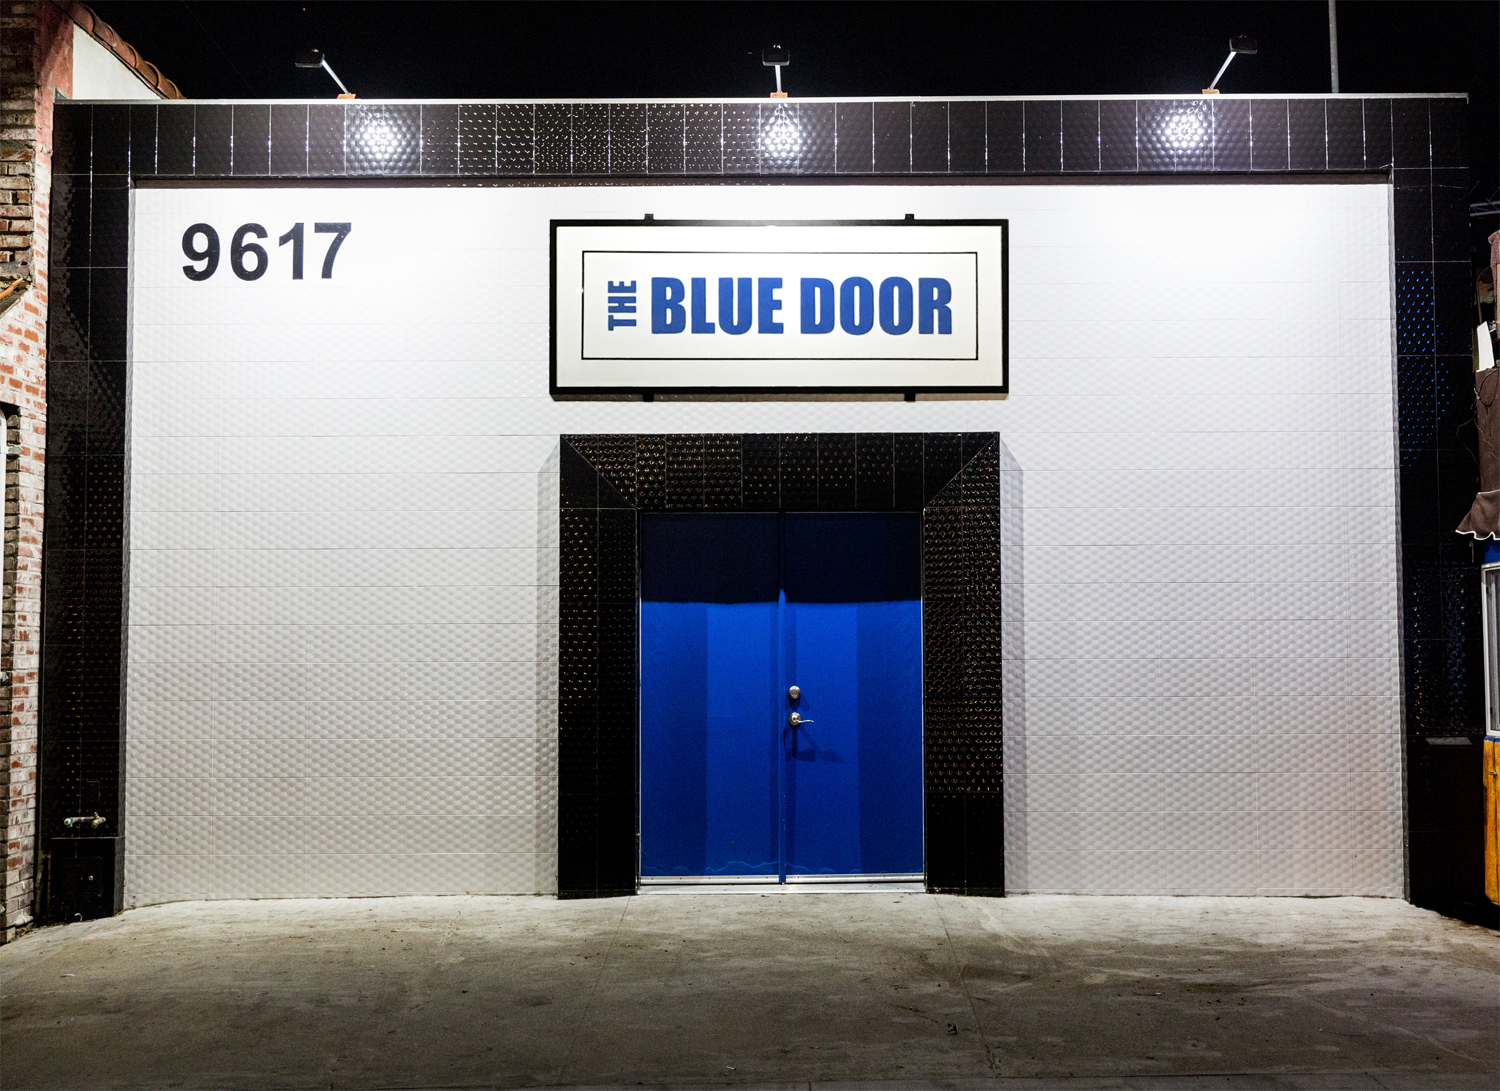 The Blue Door Exterior.png